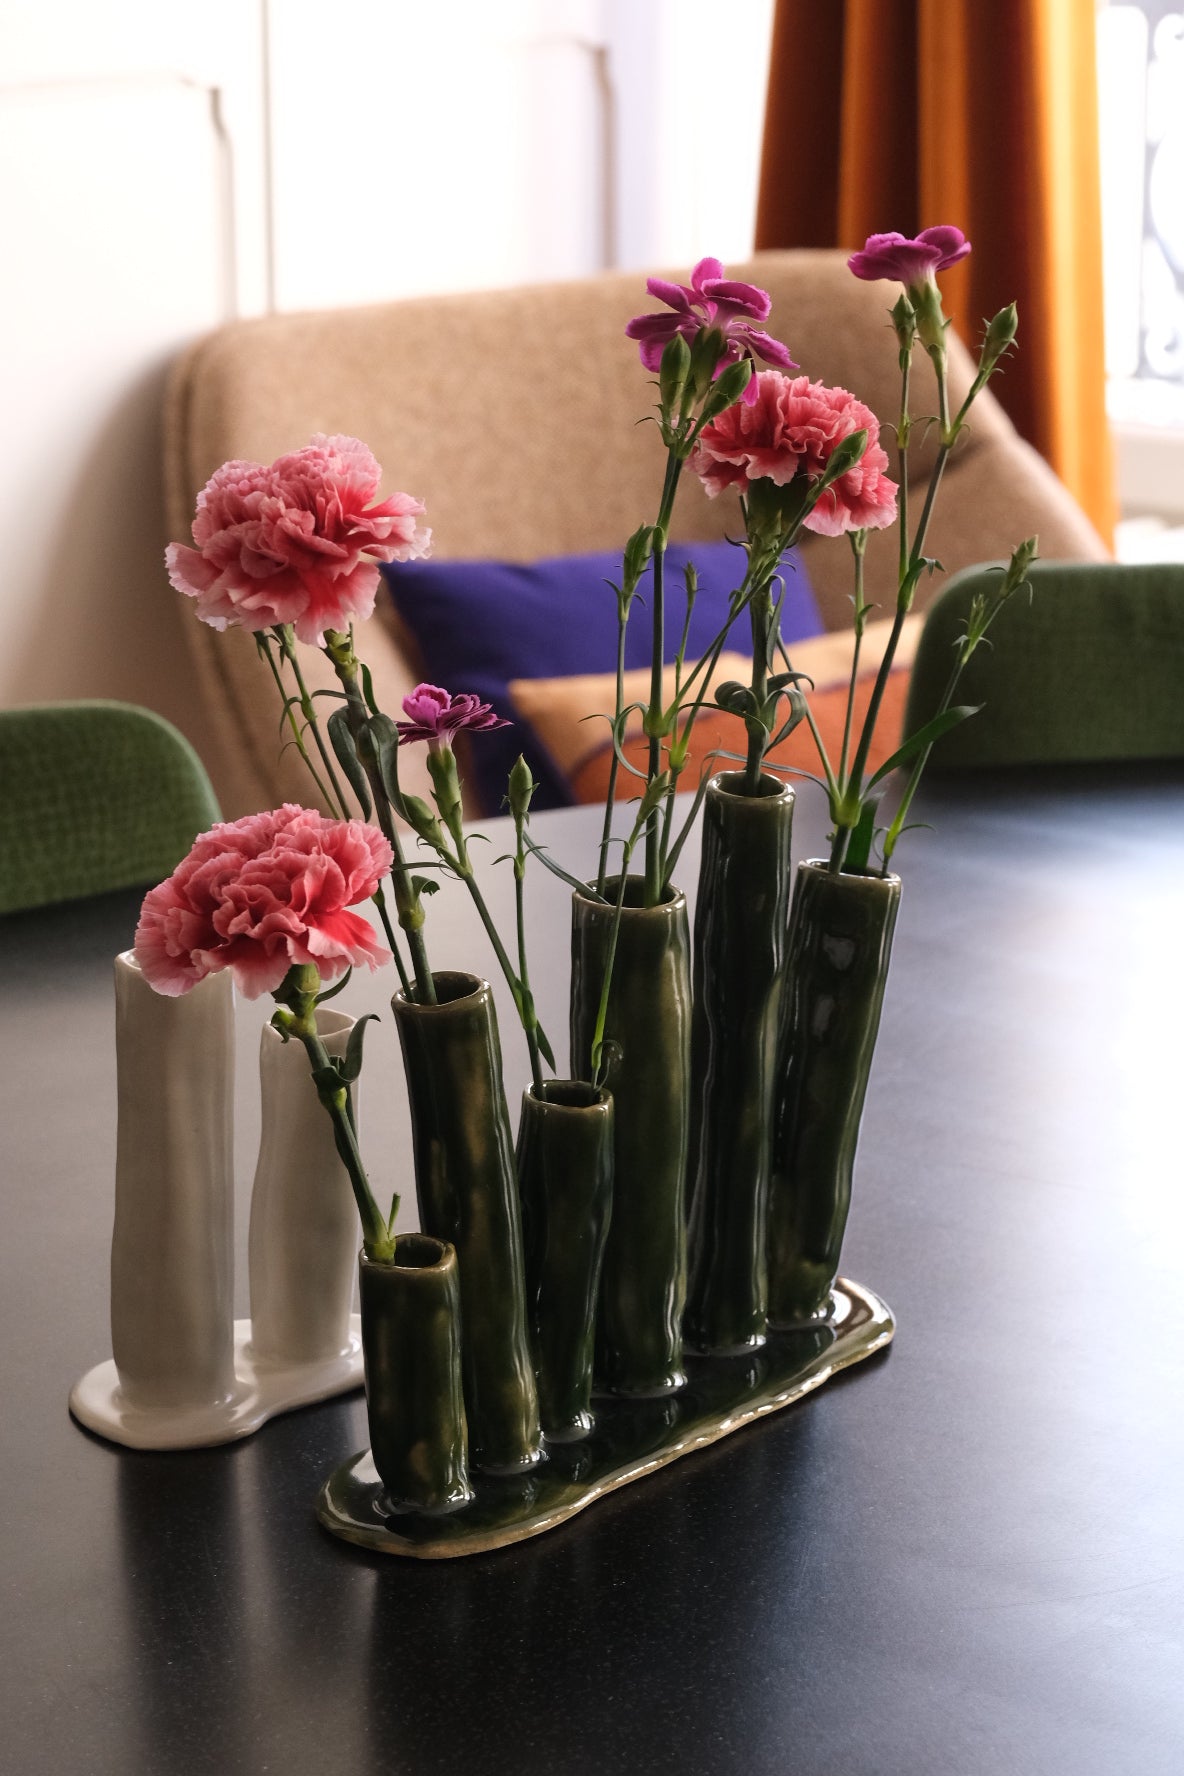 Soliflore en grès, fait à la main en région parisienne. Ikebana à six fleurs nous charme par son aspect délicat et original. Décliné en deux couleurs très minérales (vert et blanc), l'Ikebana saura habiller vos consoles, étagères, cheminées, ou même en centre de table. Ici soliflore vert. Email naturel.